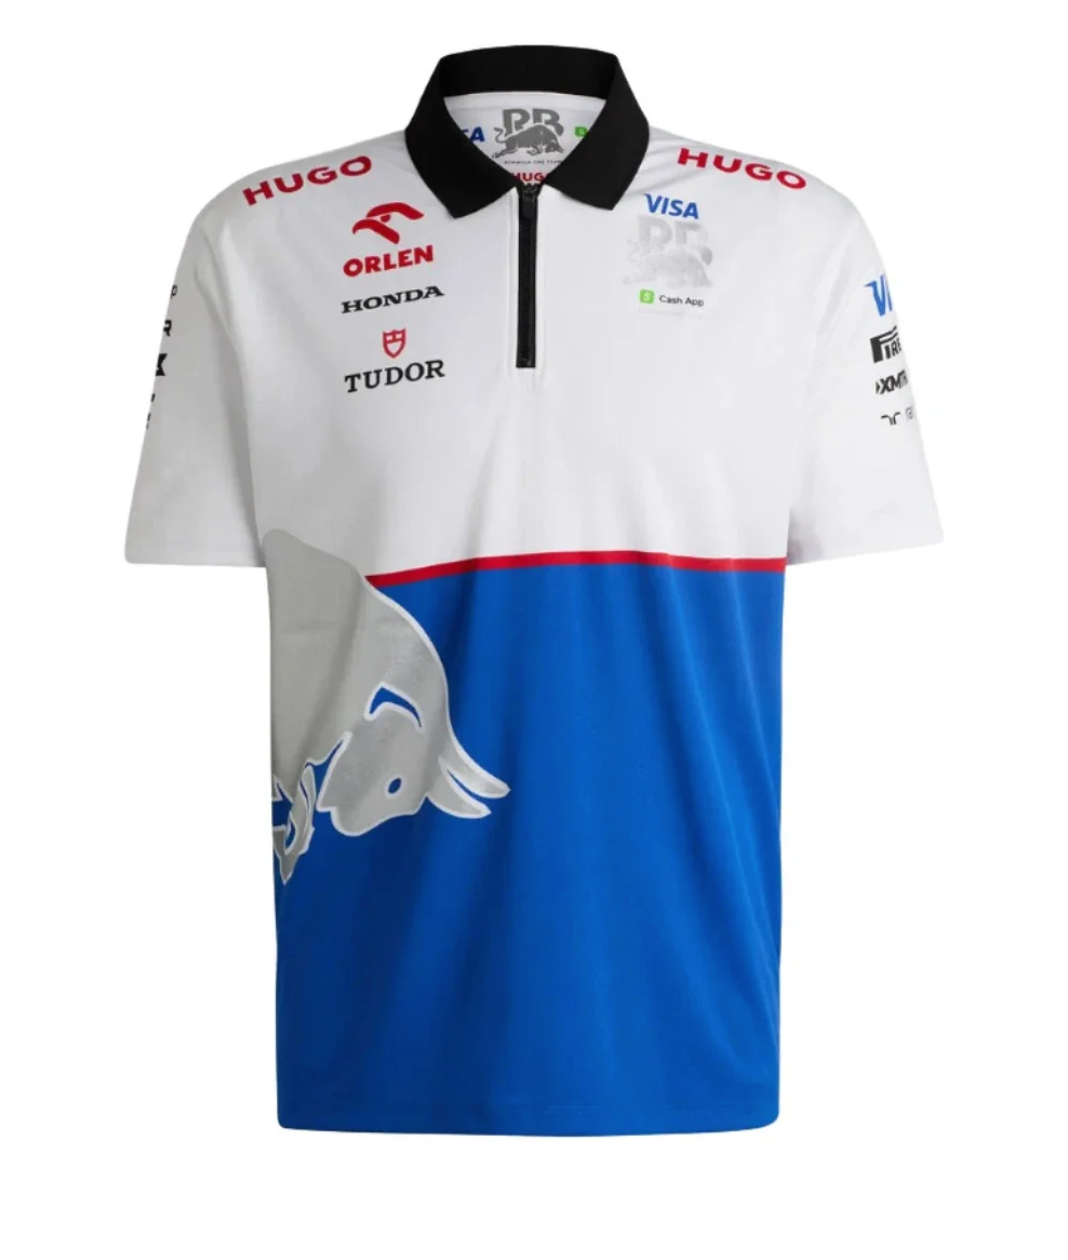 Visa Cash App F1 Team 2024 Polo Shirt